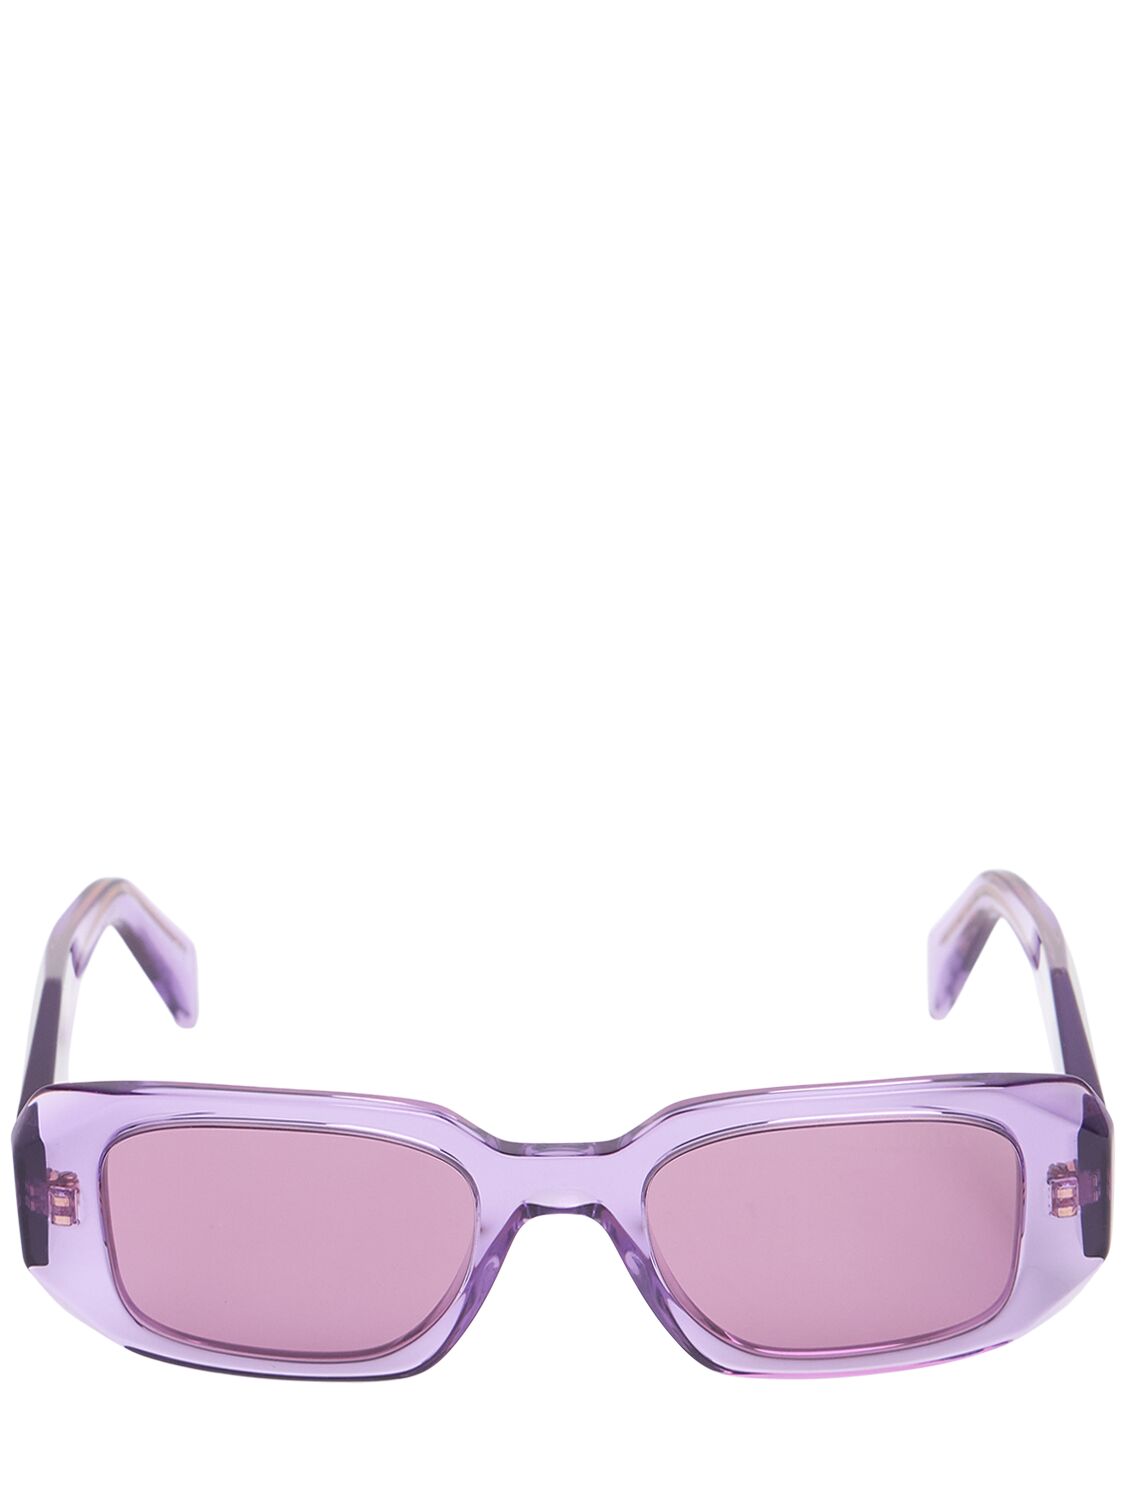 Prada Square Acetate Sunglasses In Pink